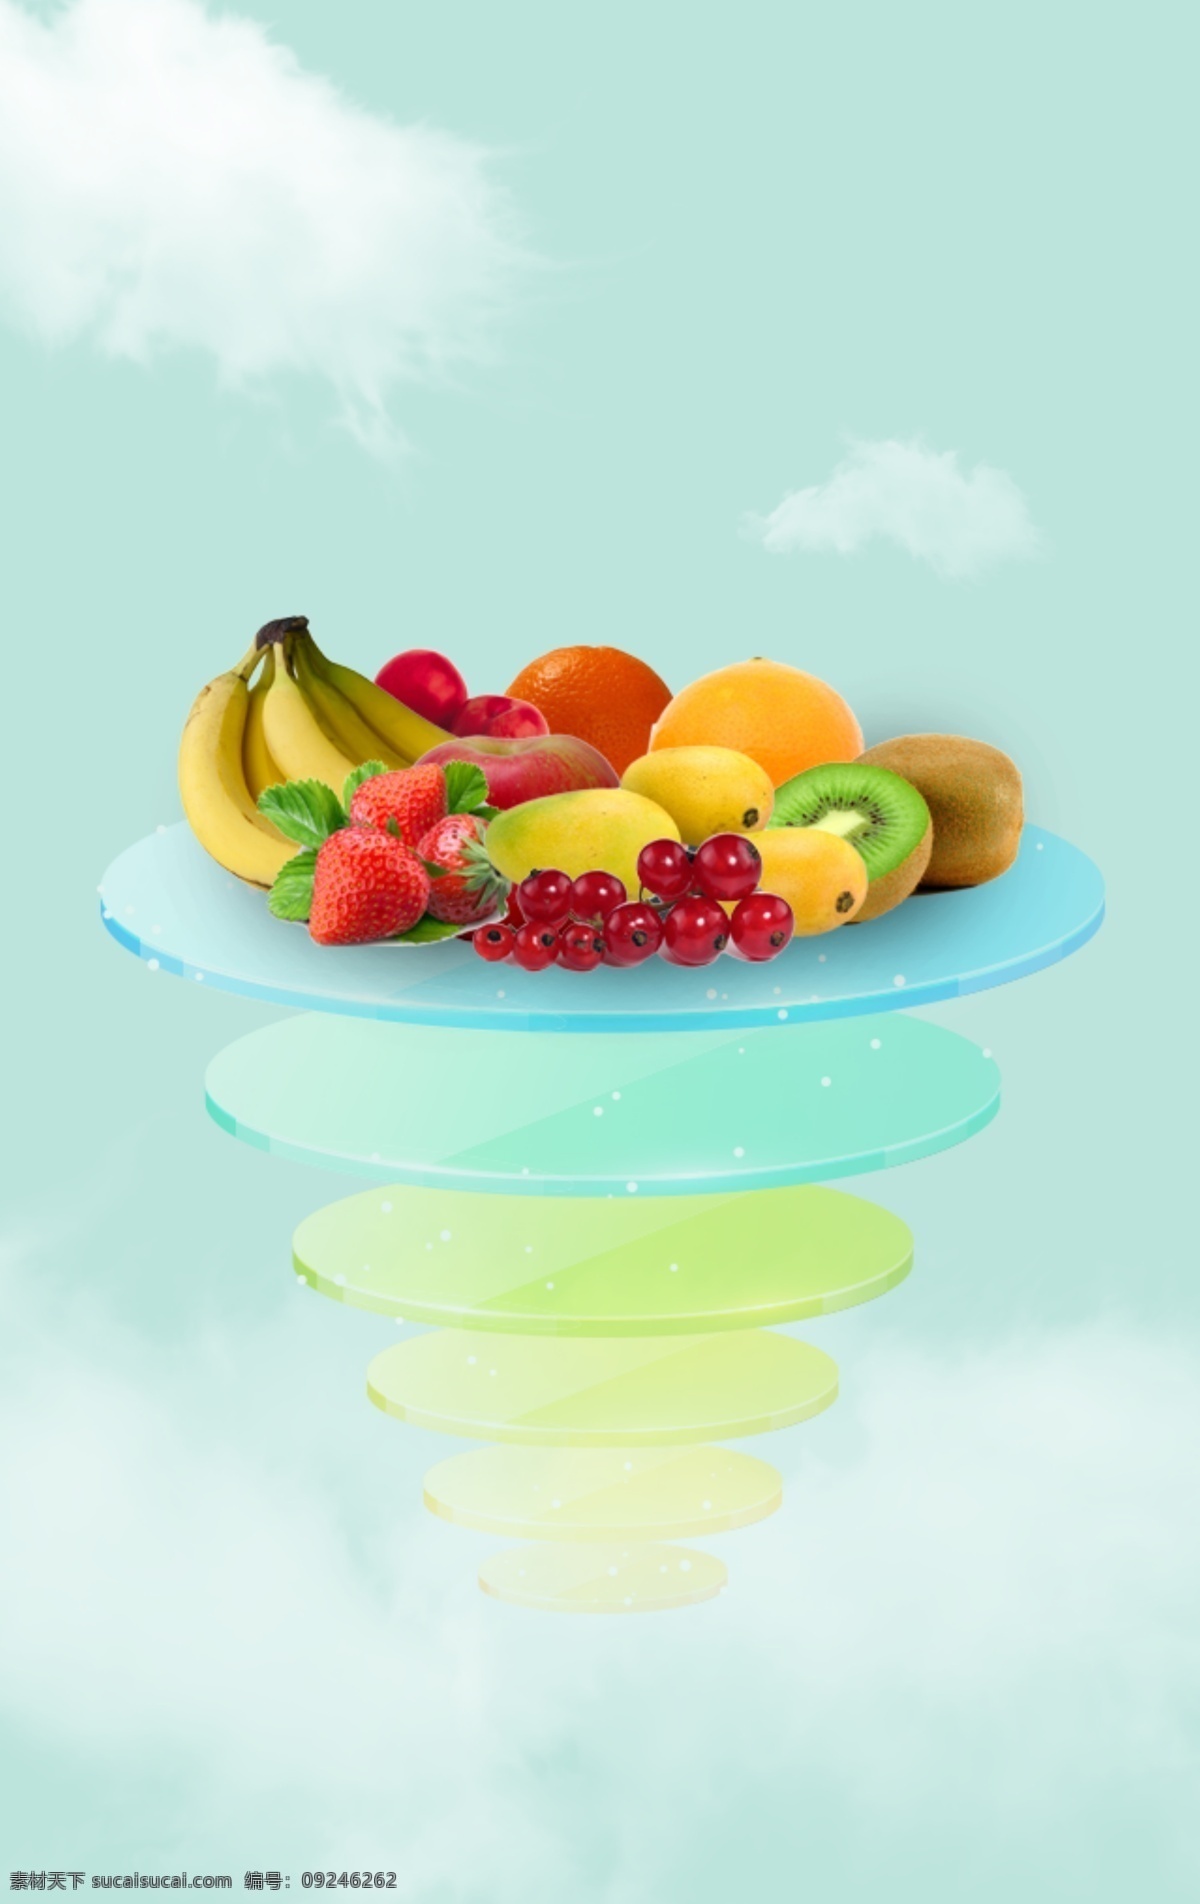 水果海报背景 水果海报 水果图片 水果素材 创意水果海报 青色 天蓝色